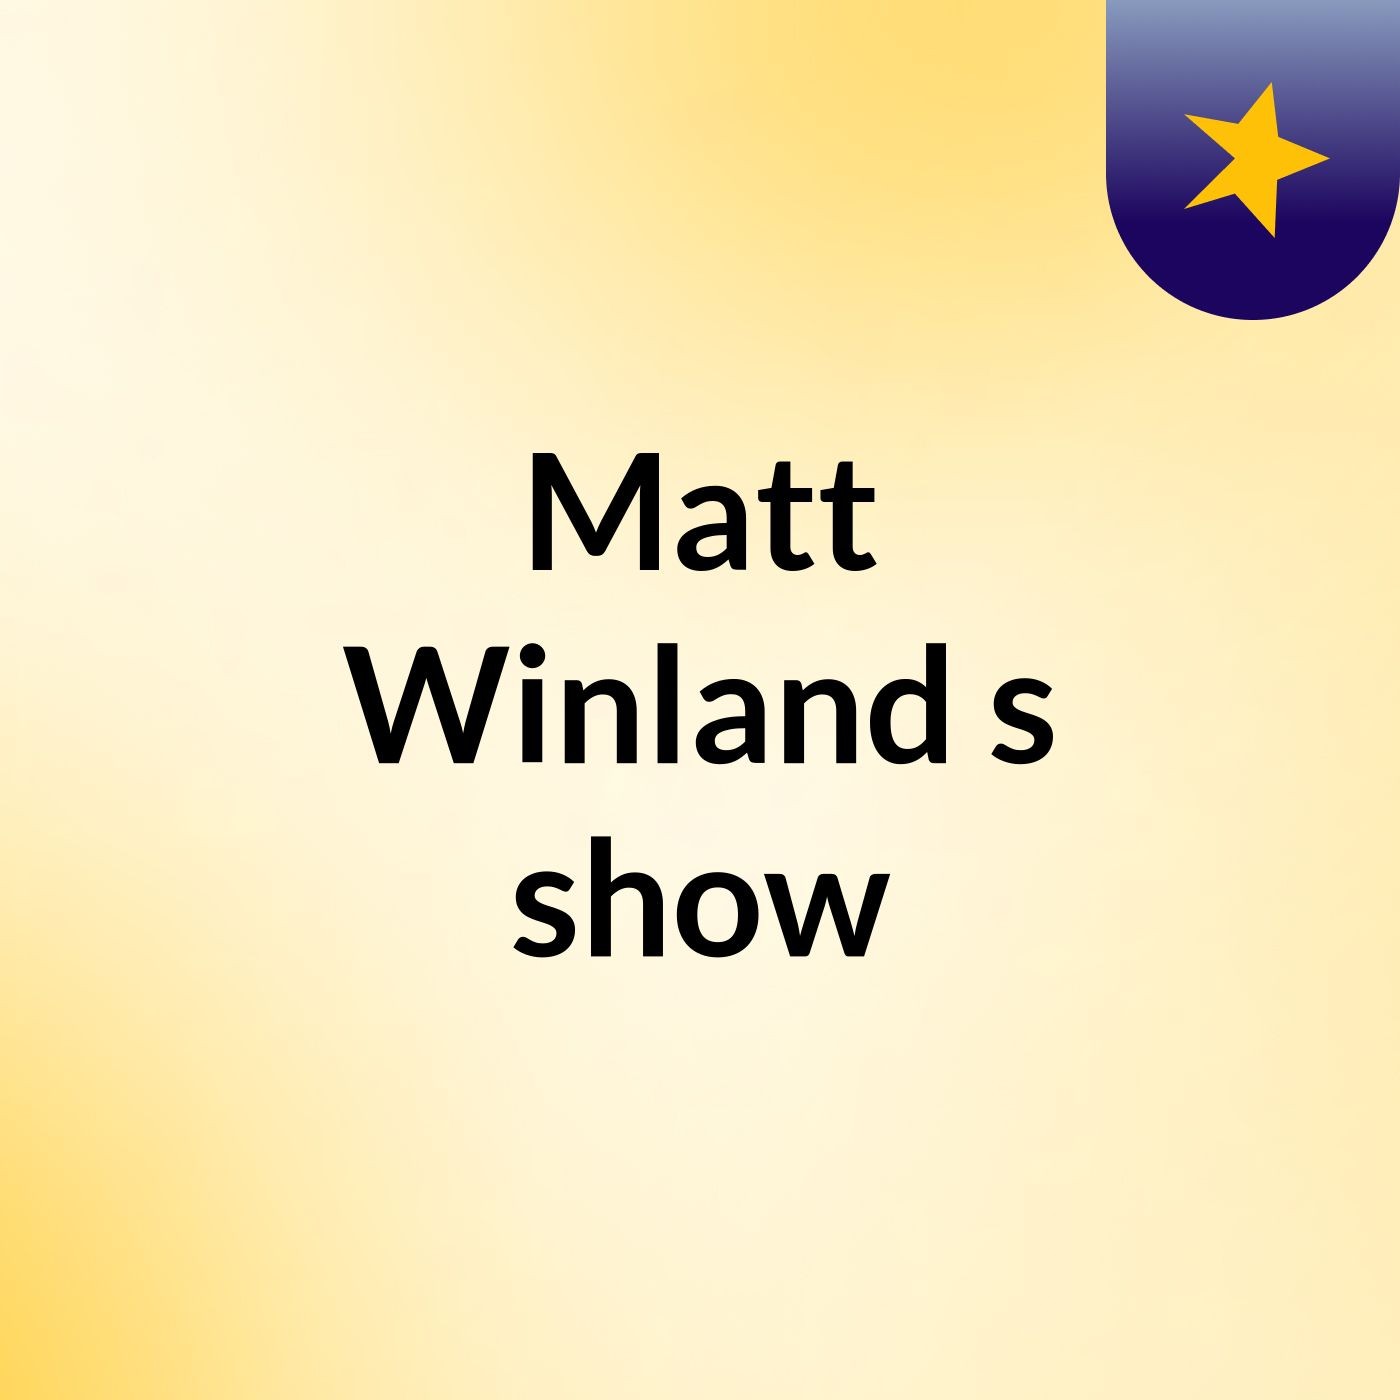 Matt Winland's show